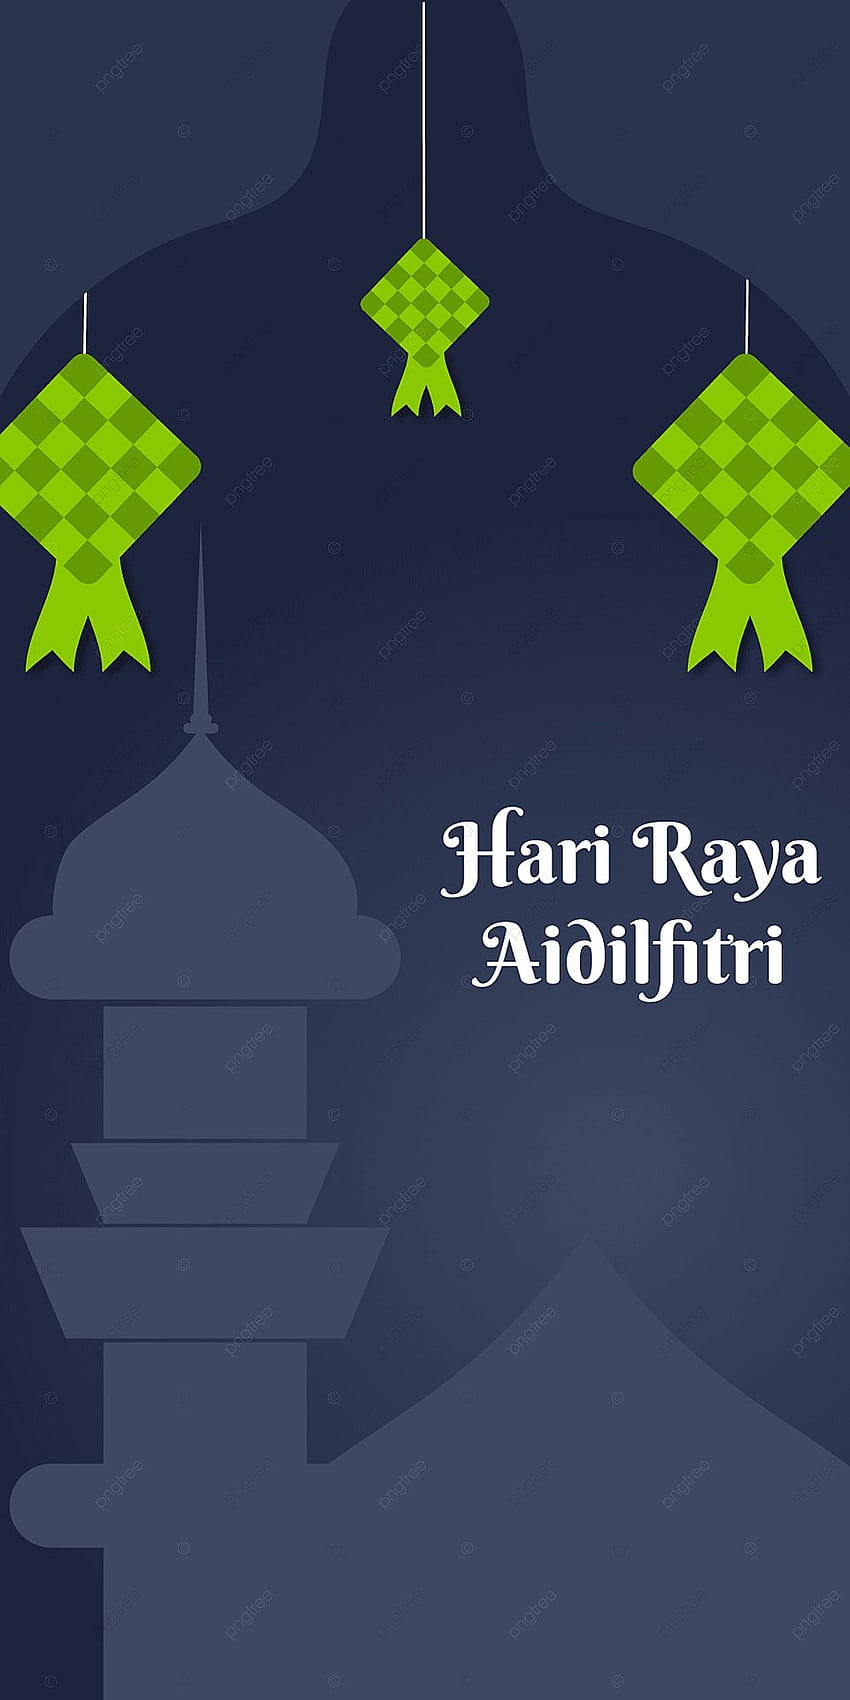 Hari Raya Aidilfitri s móviles Diseño de arte, Hari Raya, Hari Raya Aidilfitri, s de Eid para fondo de pantalla del teléfono